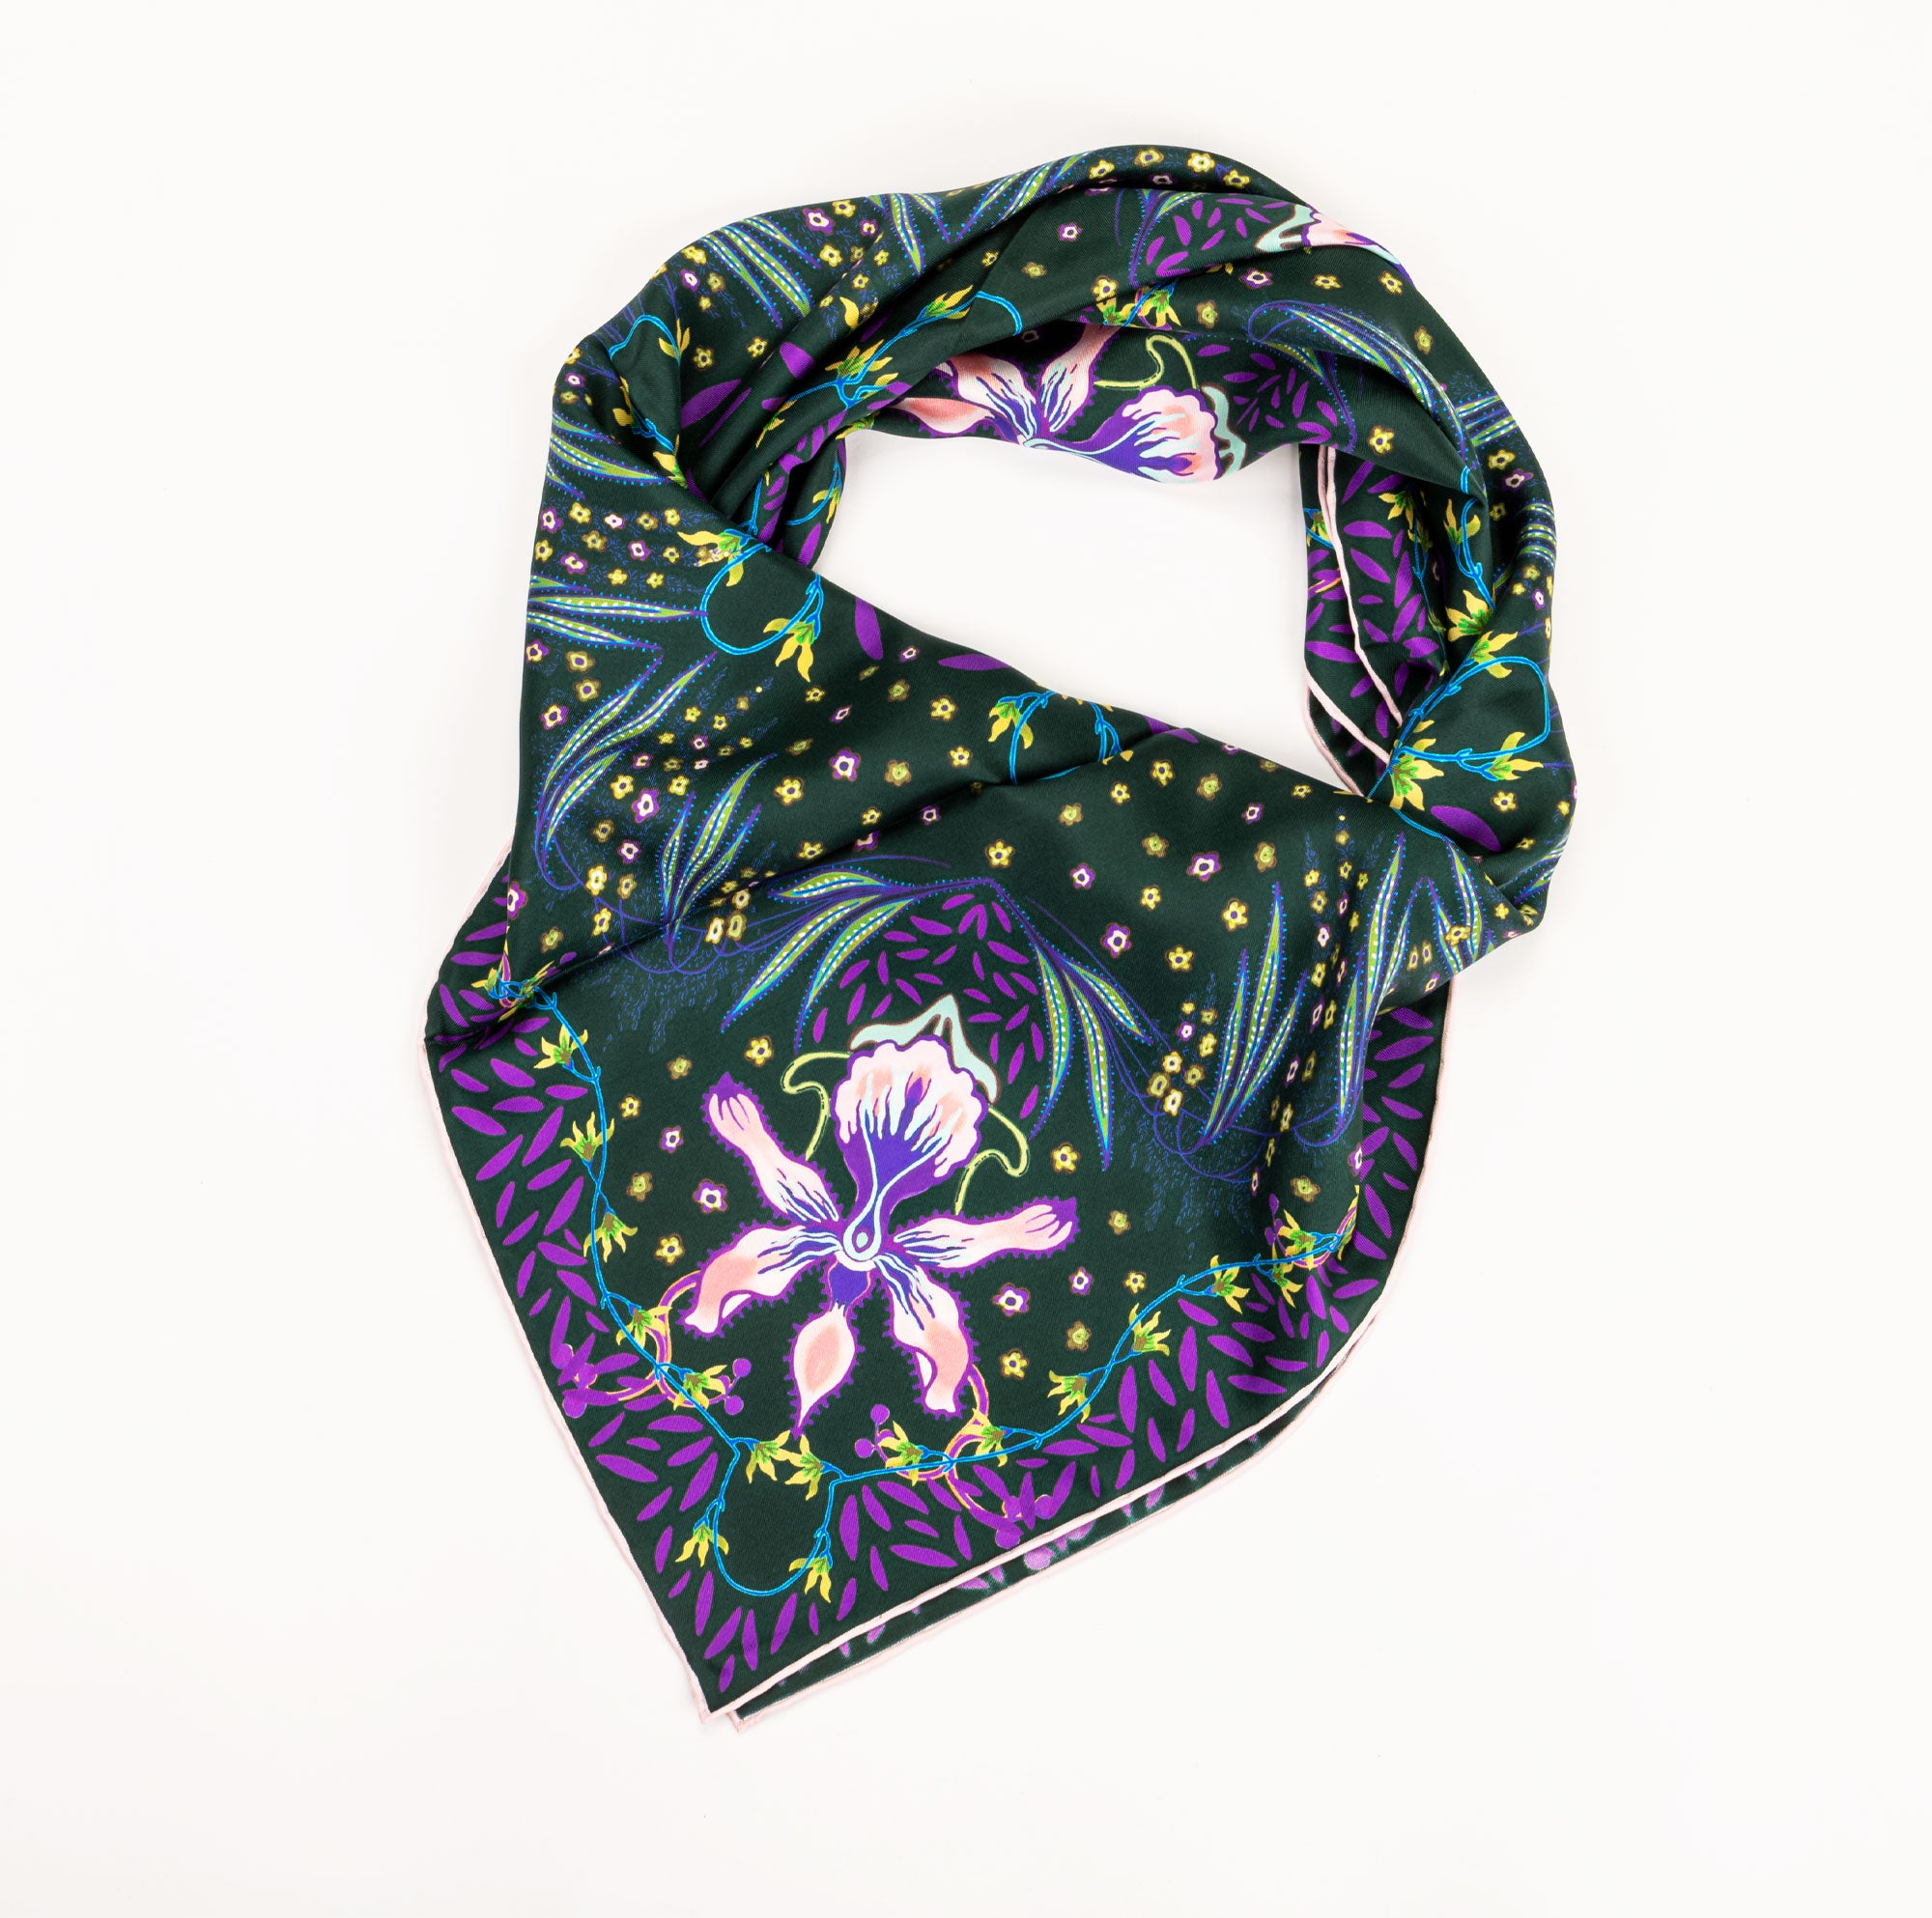 givenchy | foulard in seta da donna